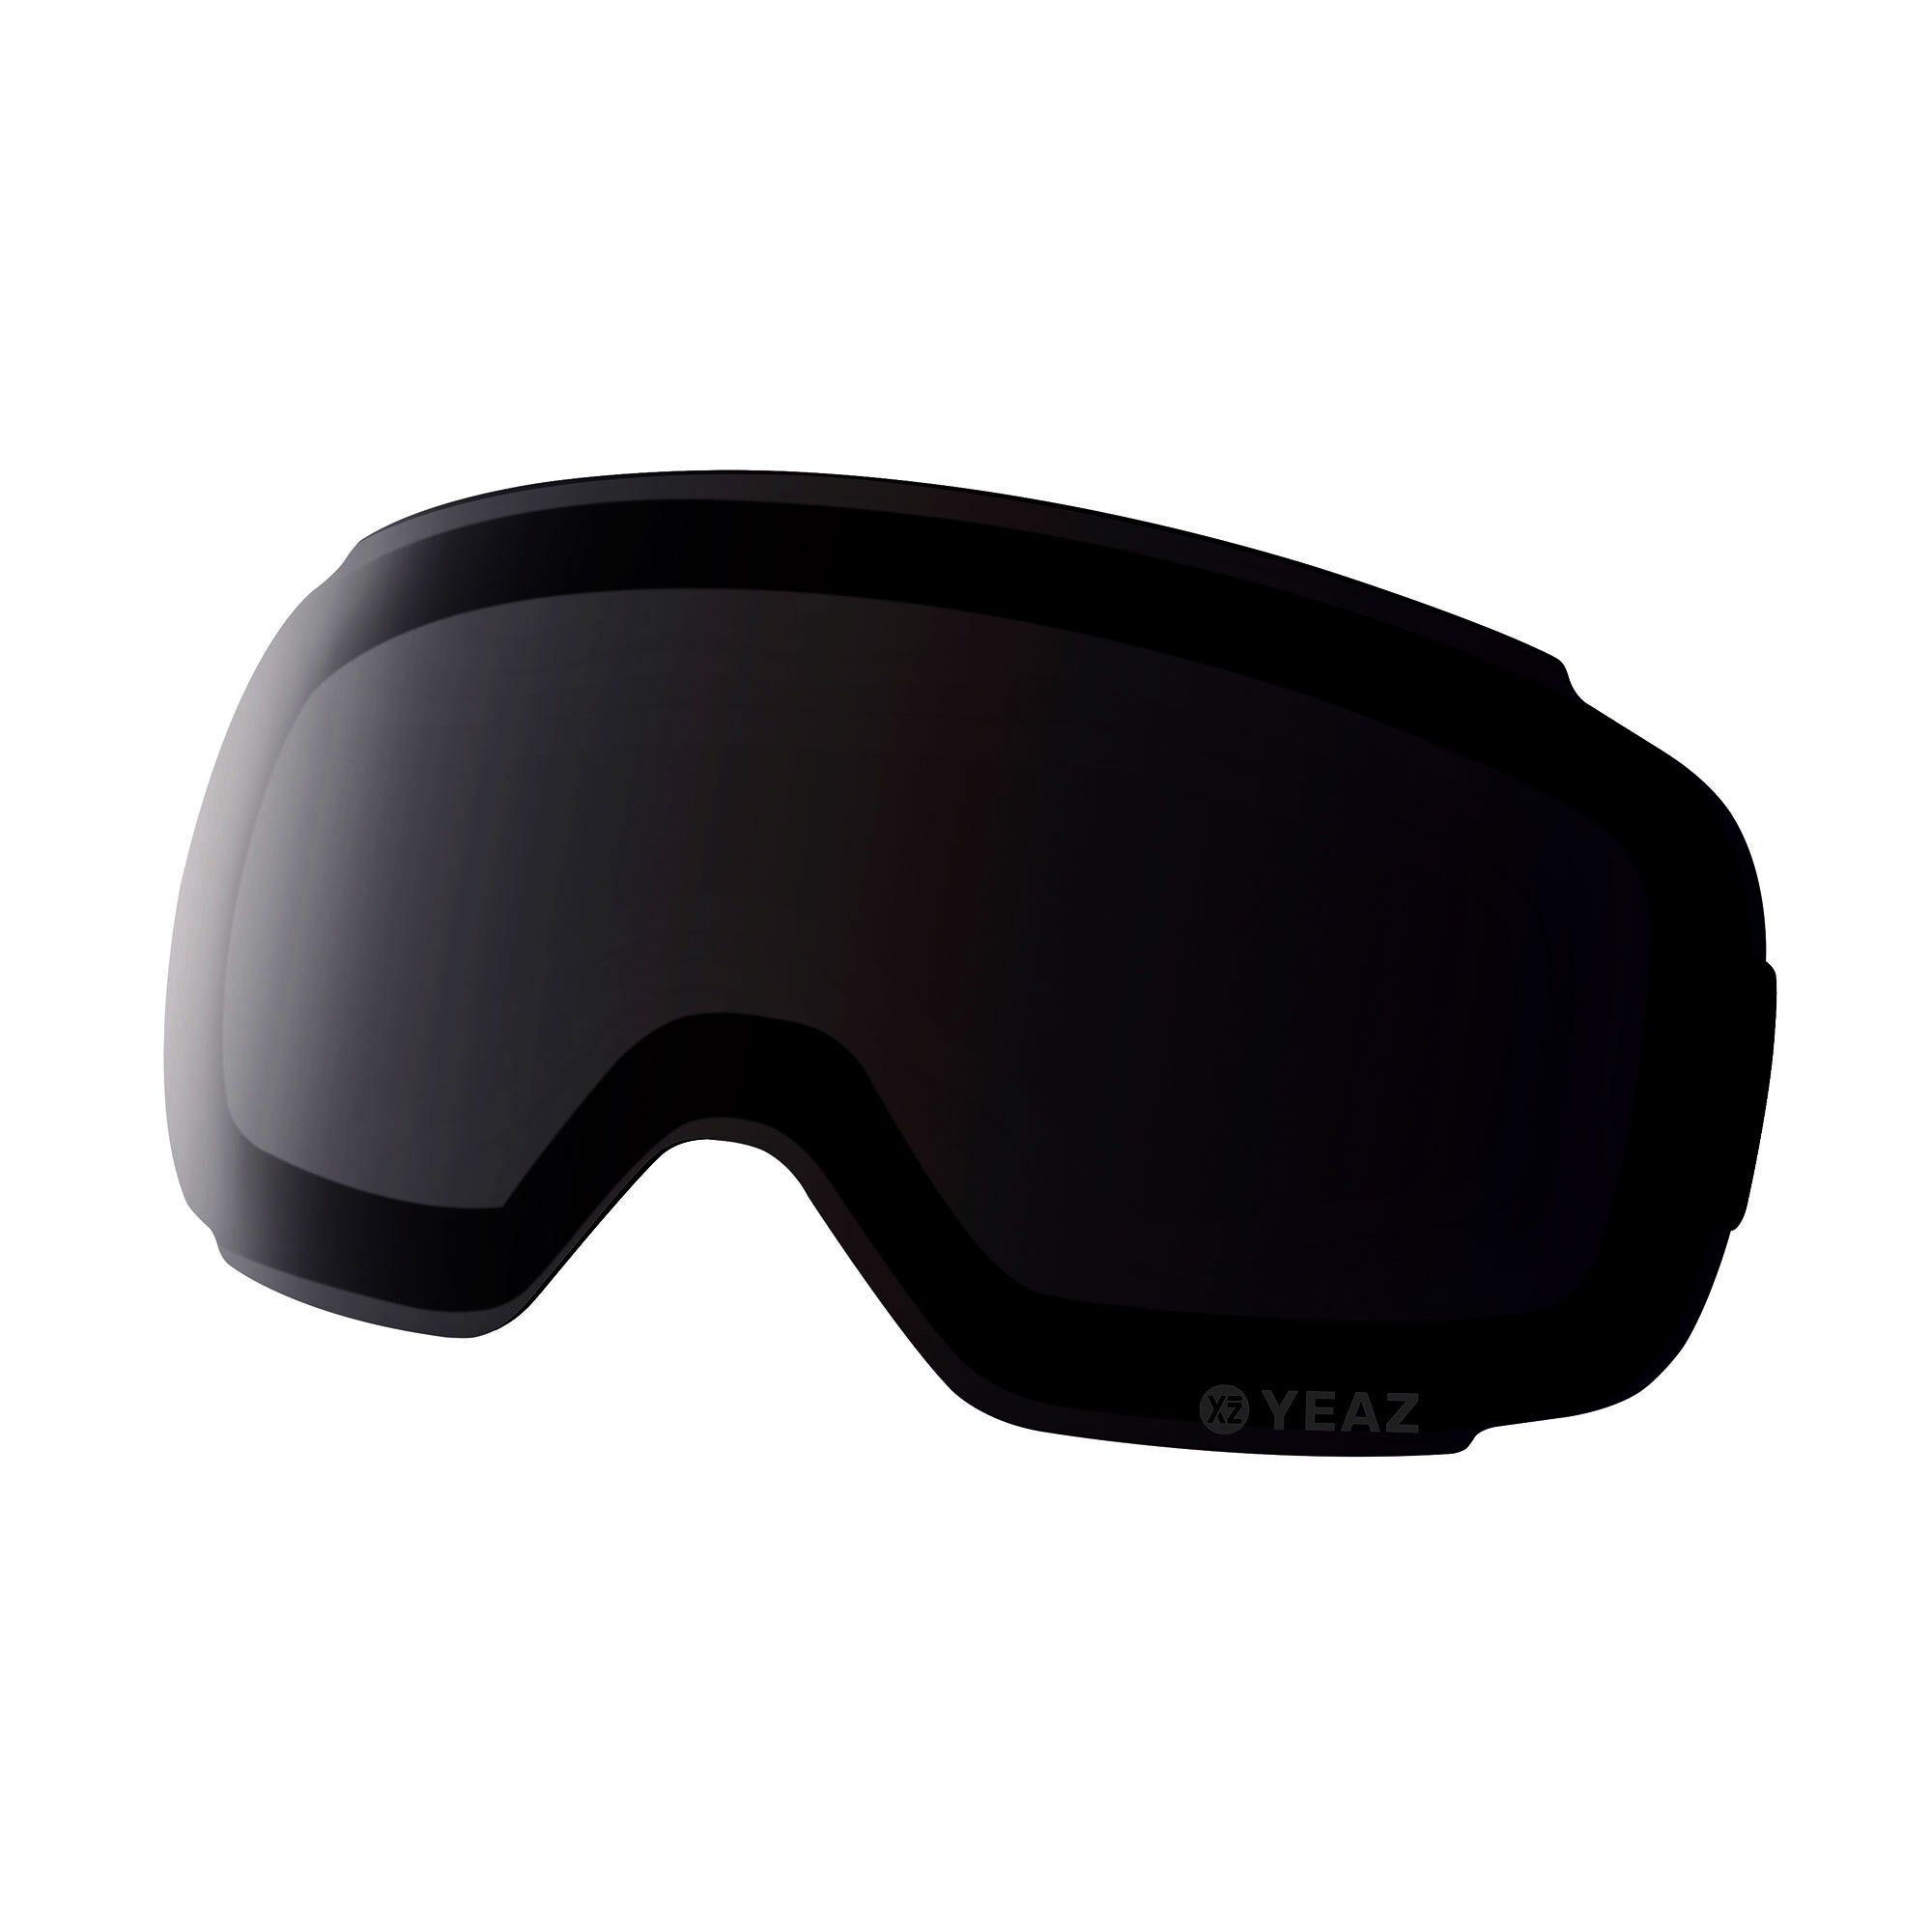 YEAZ Skibrille TWEAK-X wechselglas für ski- snowboardbrille, Magnetisches Wechselglas schwarz